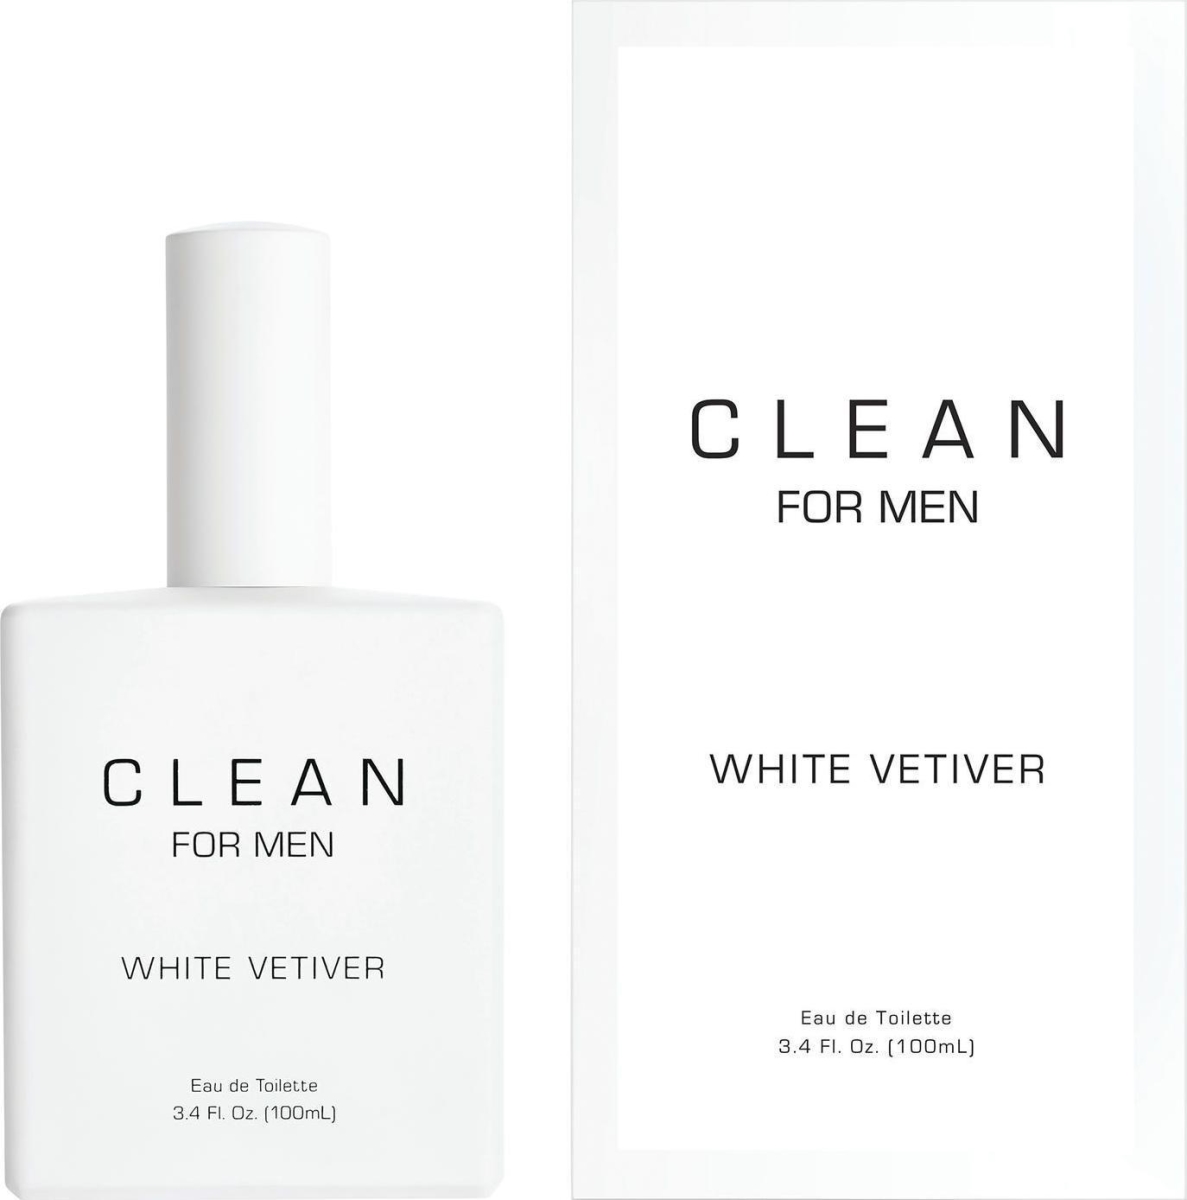 Amclnwv34s 3.4 Oz Clean White Vetiver Eau De Toilette Spray For Men